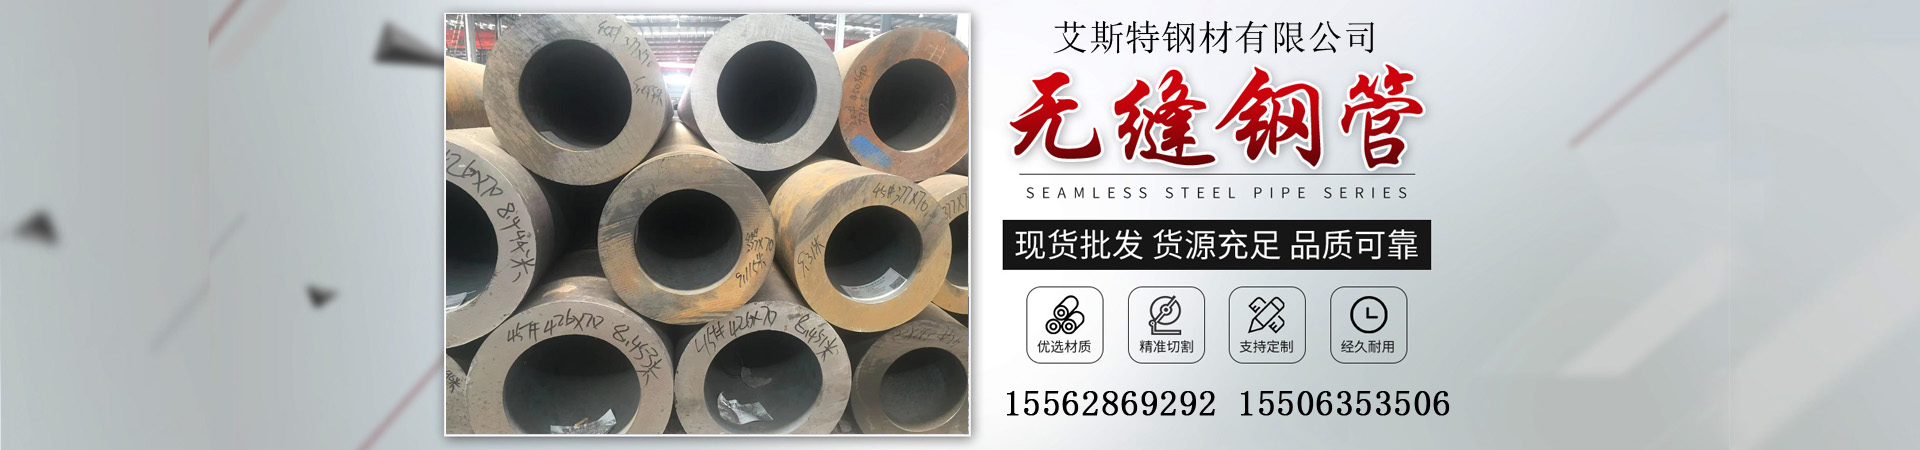 大口径无缝钢管、台湾本地大口径无缝钢管、台湾、台湾大口径无缝钢管